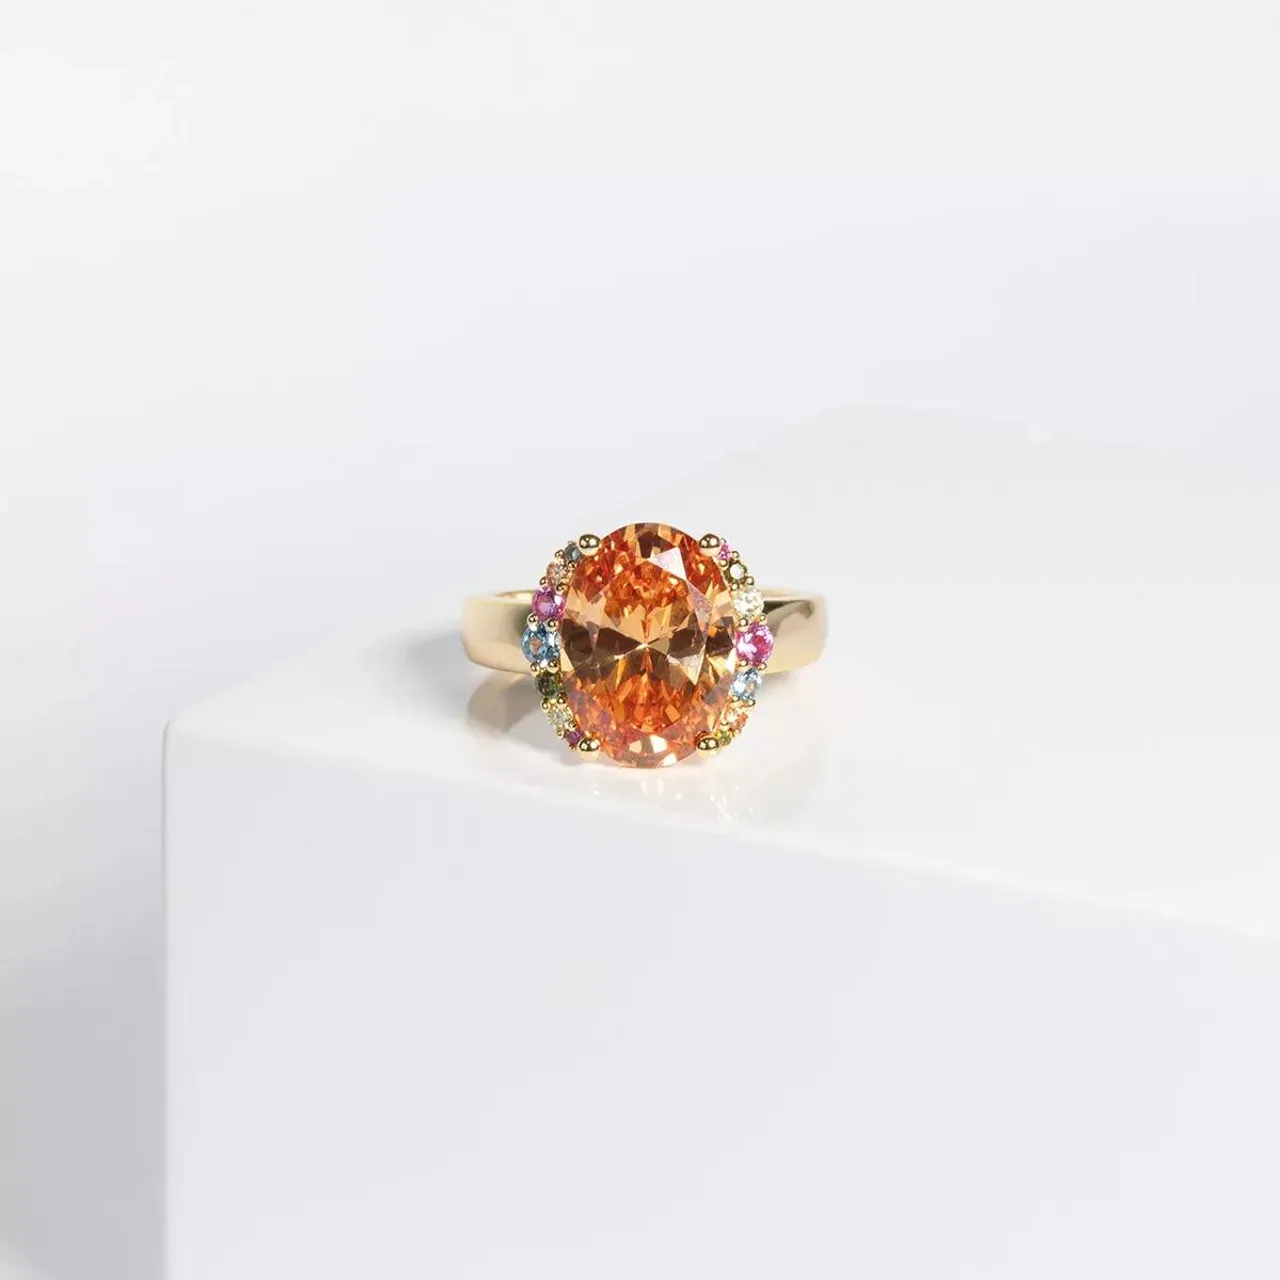 Sif Jakobs Jewellery Rings - Ellisse Grande Ring - gold - Rings for ladies